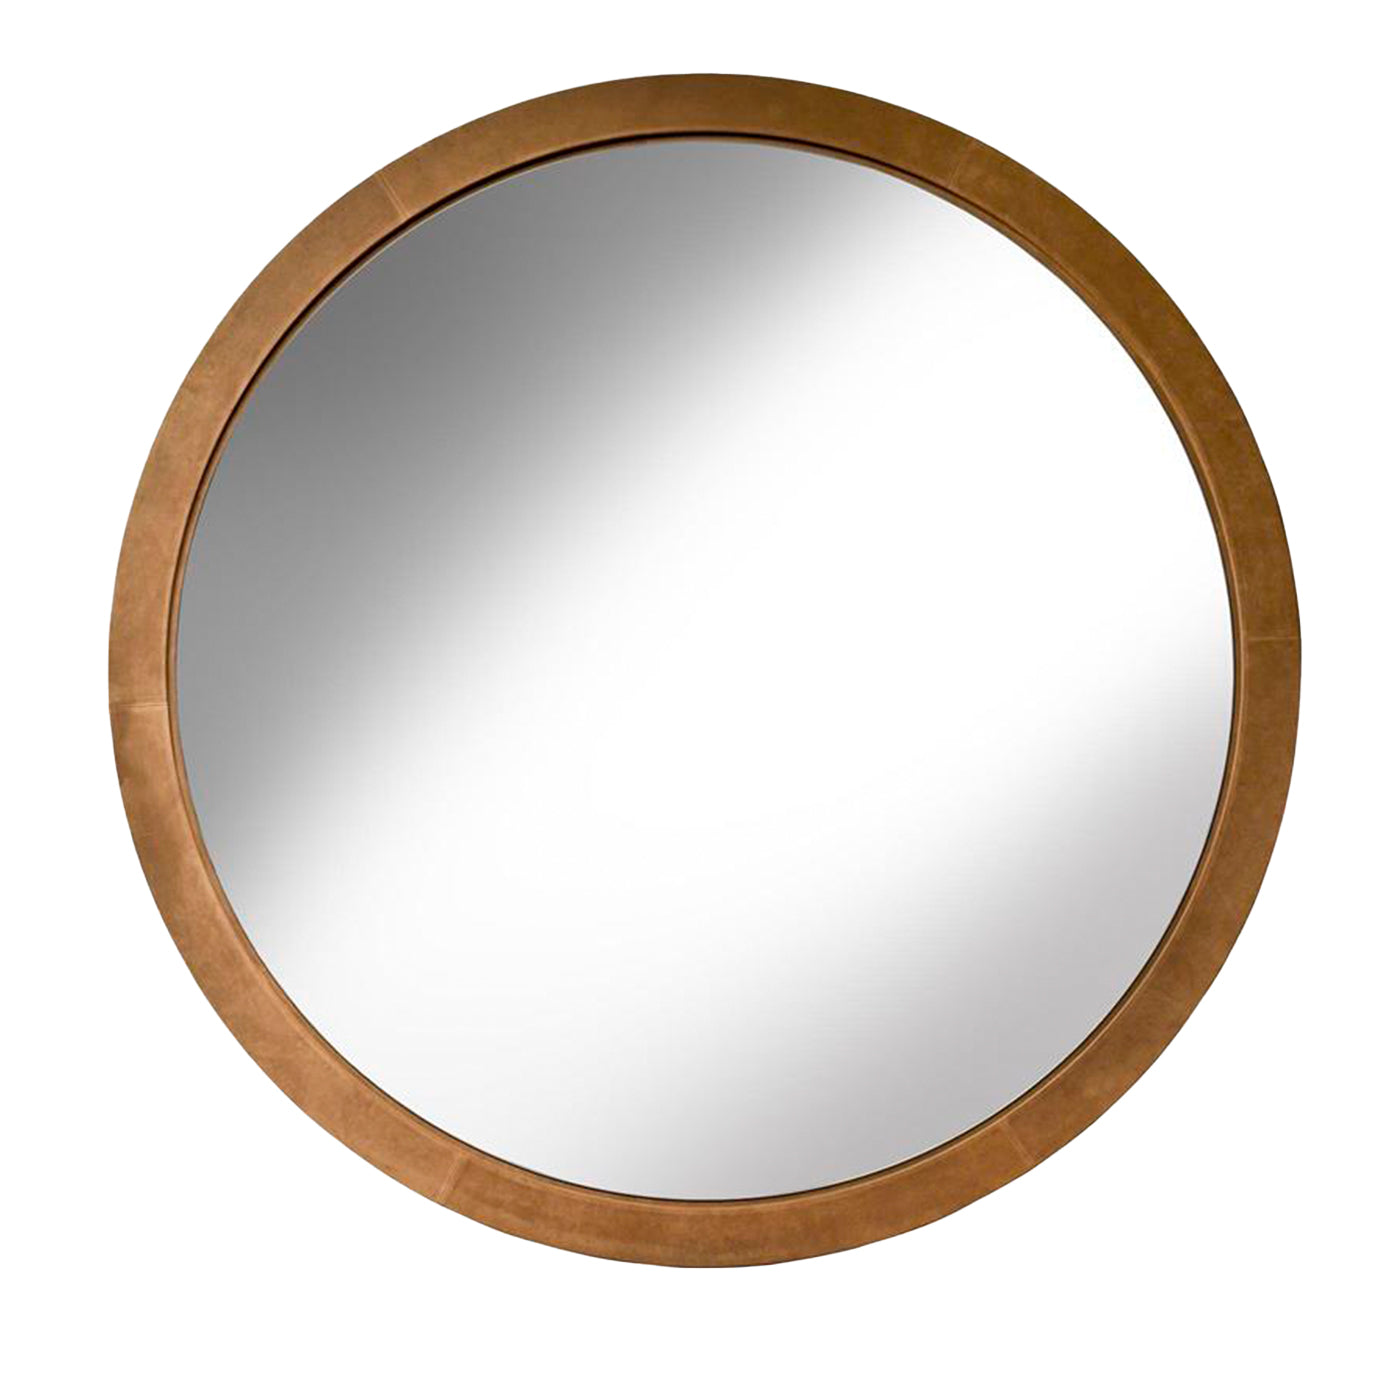 Volterra Round Brown-Leather Mirror - Main view